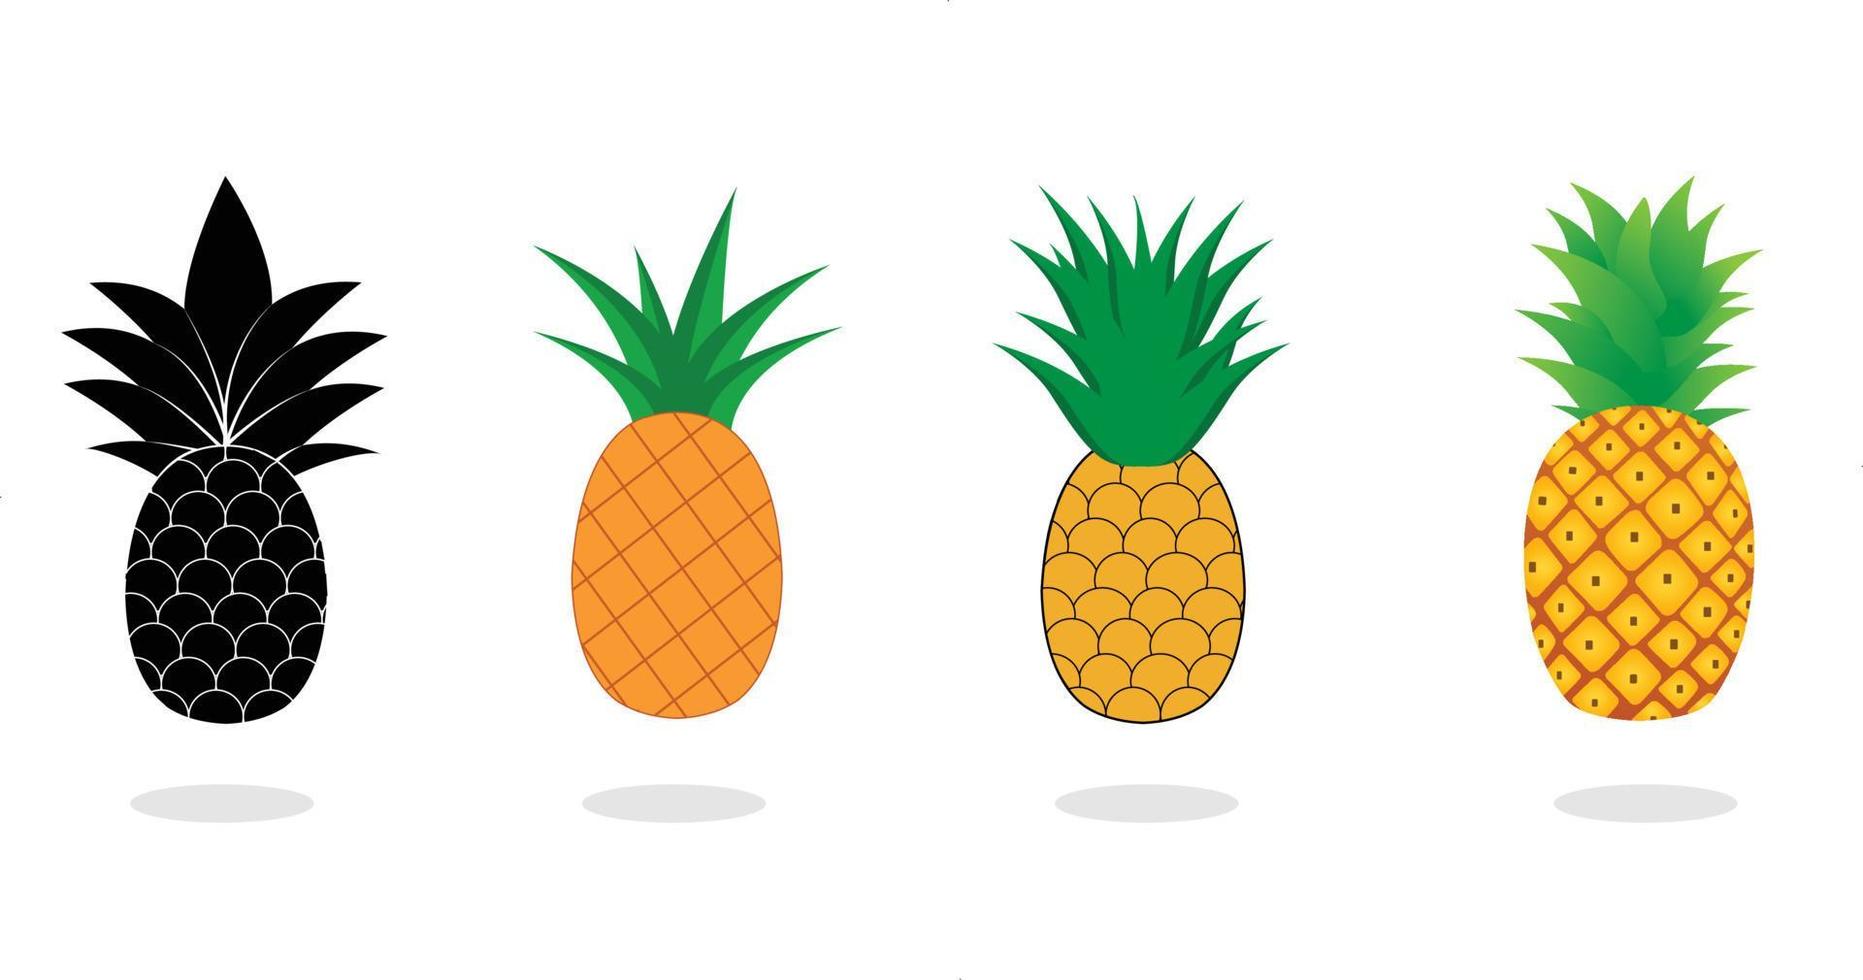 ananas collectie. illustratie van ananas fruit met geïsoleerde cartoon stijl op witte achtergrond. zomerfruit, voor een gezond en natuurlijk leven, vectorillustratie. vector